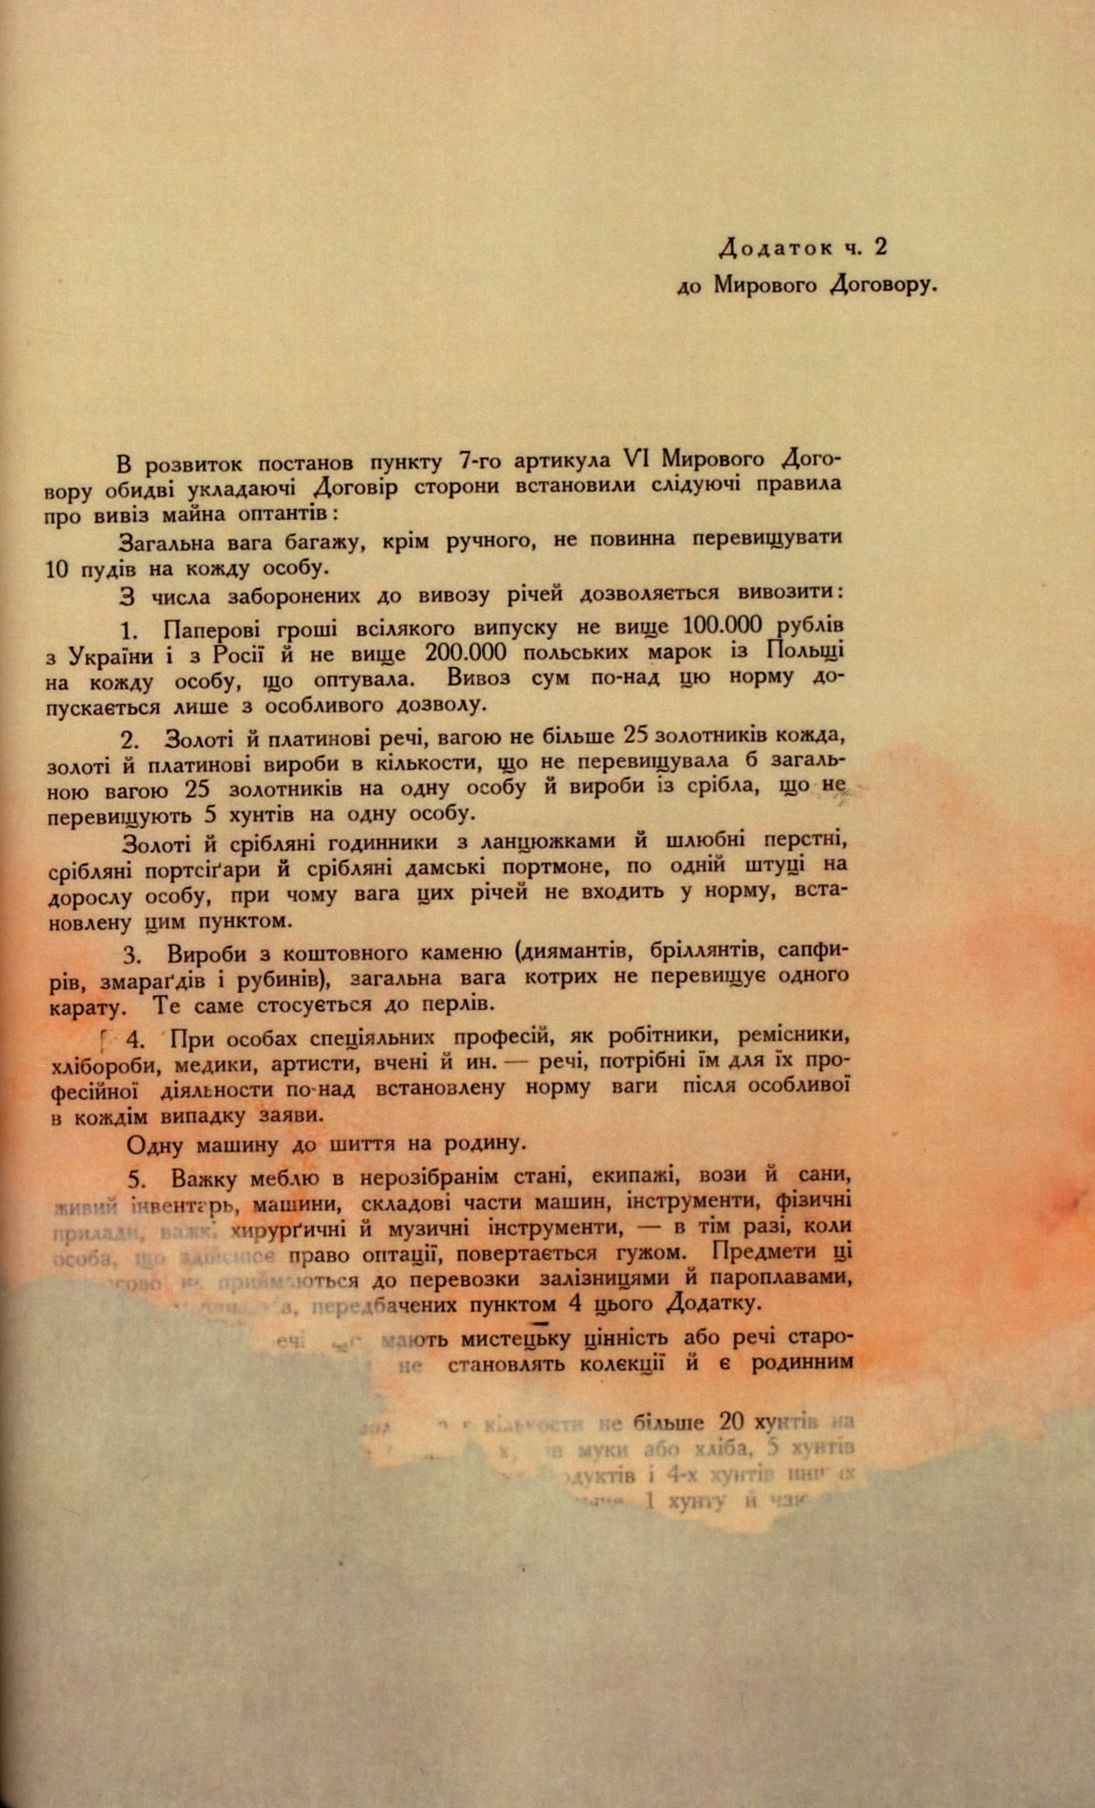 Traktat Pokoju między Polską a Rosją i Ukrainą podpisany w Rydze dnia 18 marca 1921 roku, s. 56, MSZ, sygn. 6739.